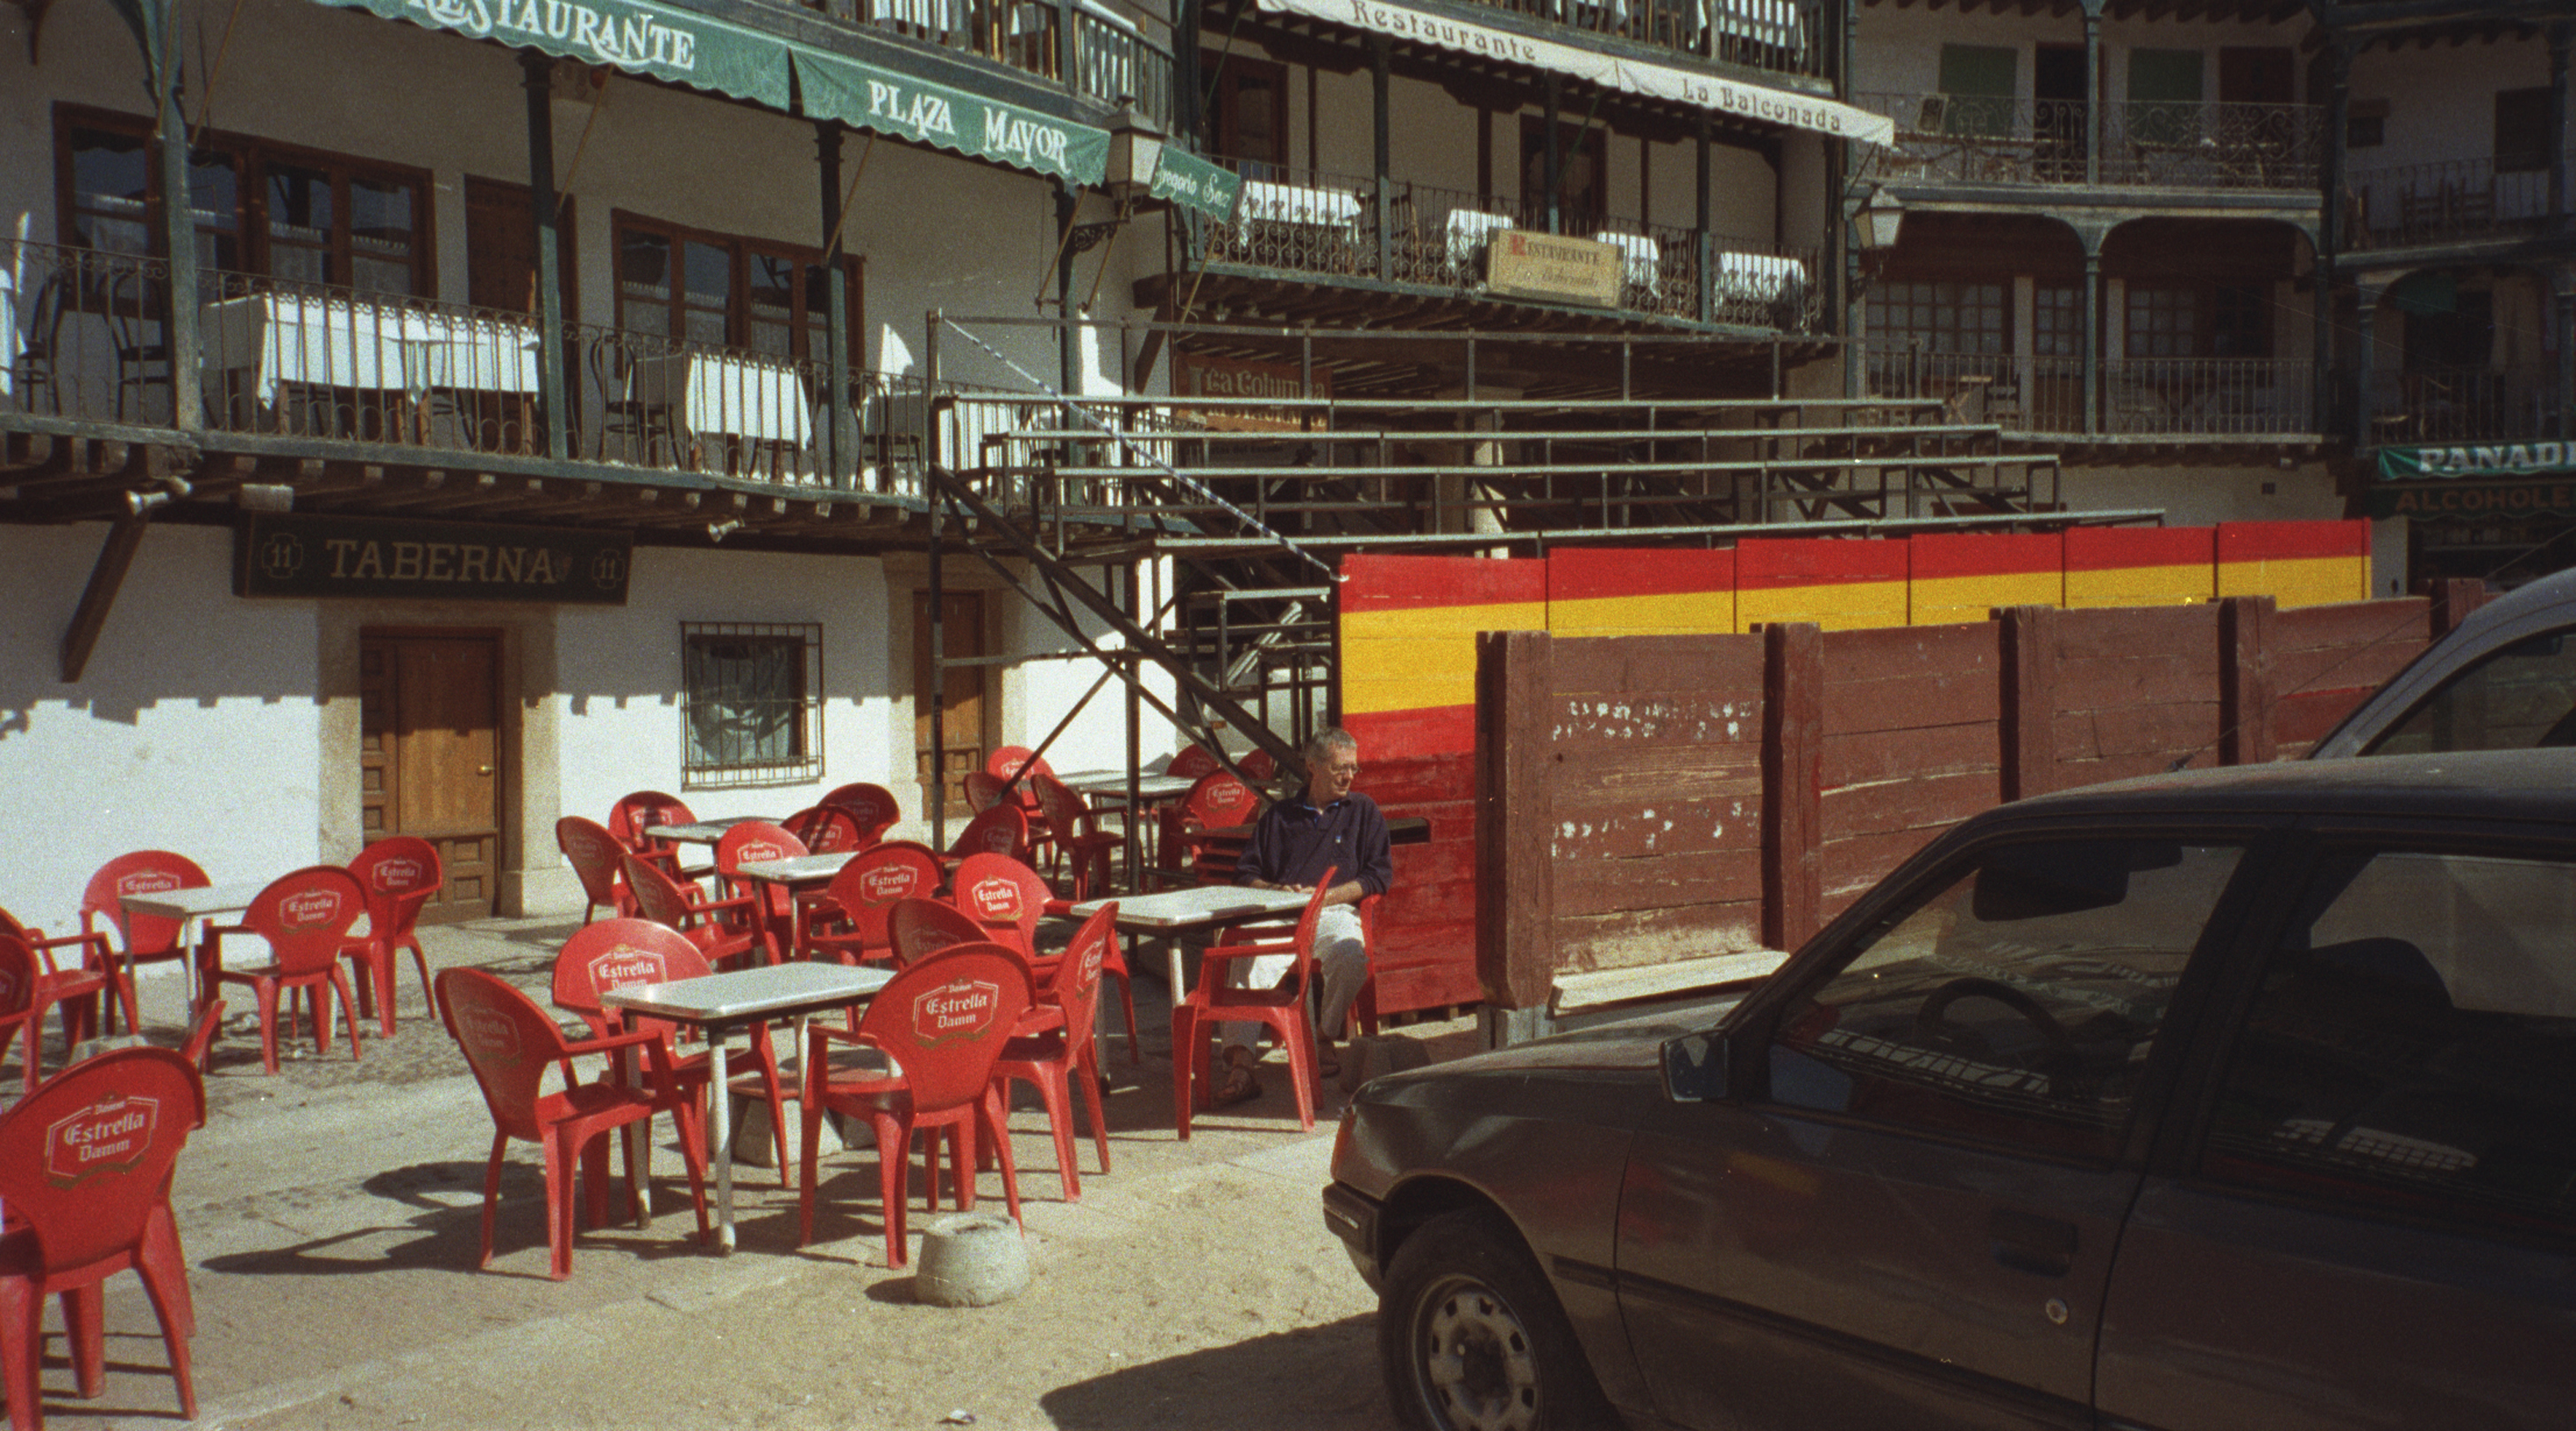 Chinchn, Plaza Mayor, 1998